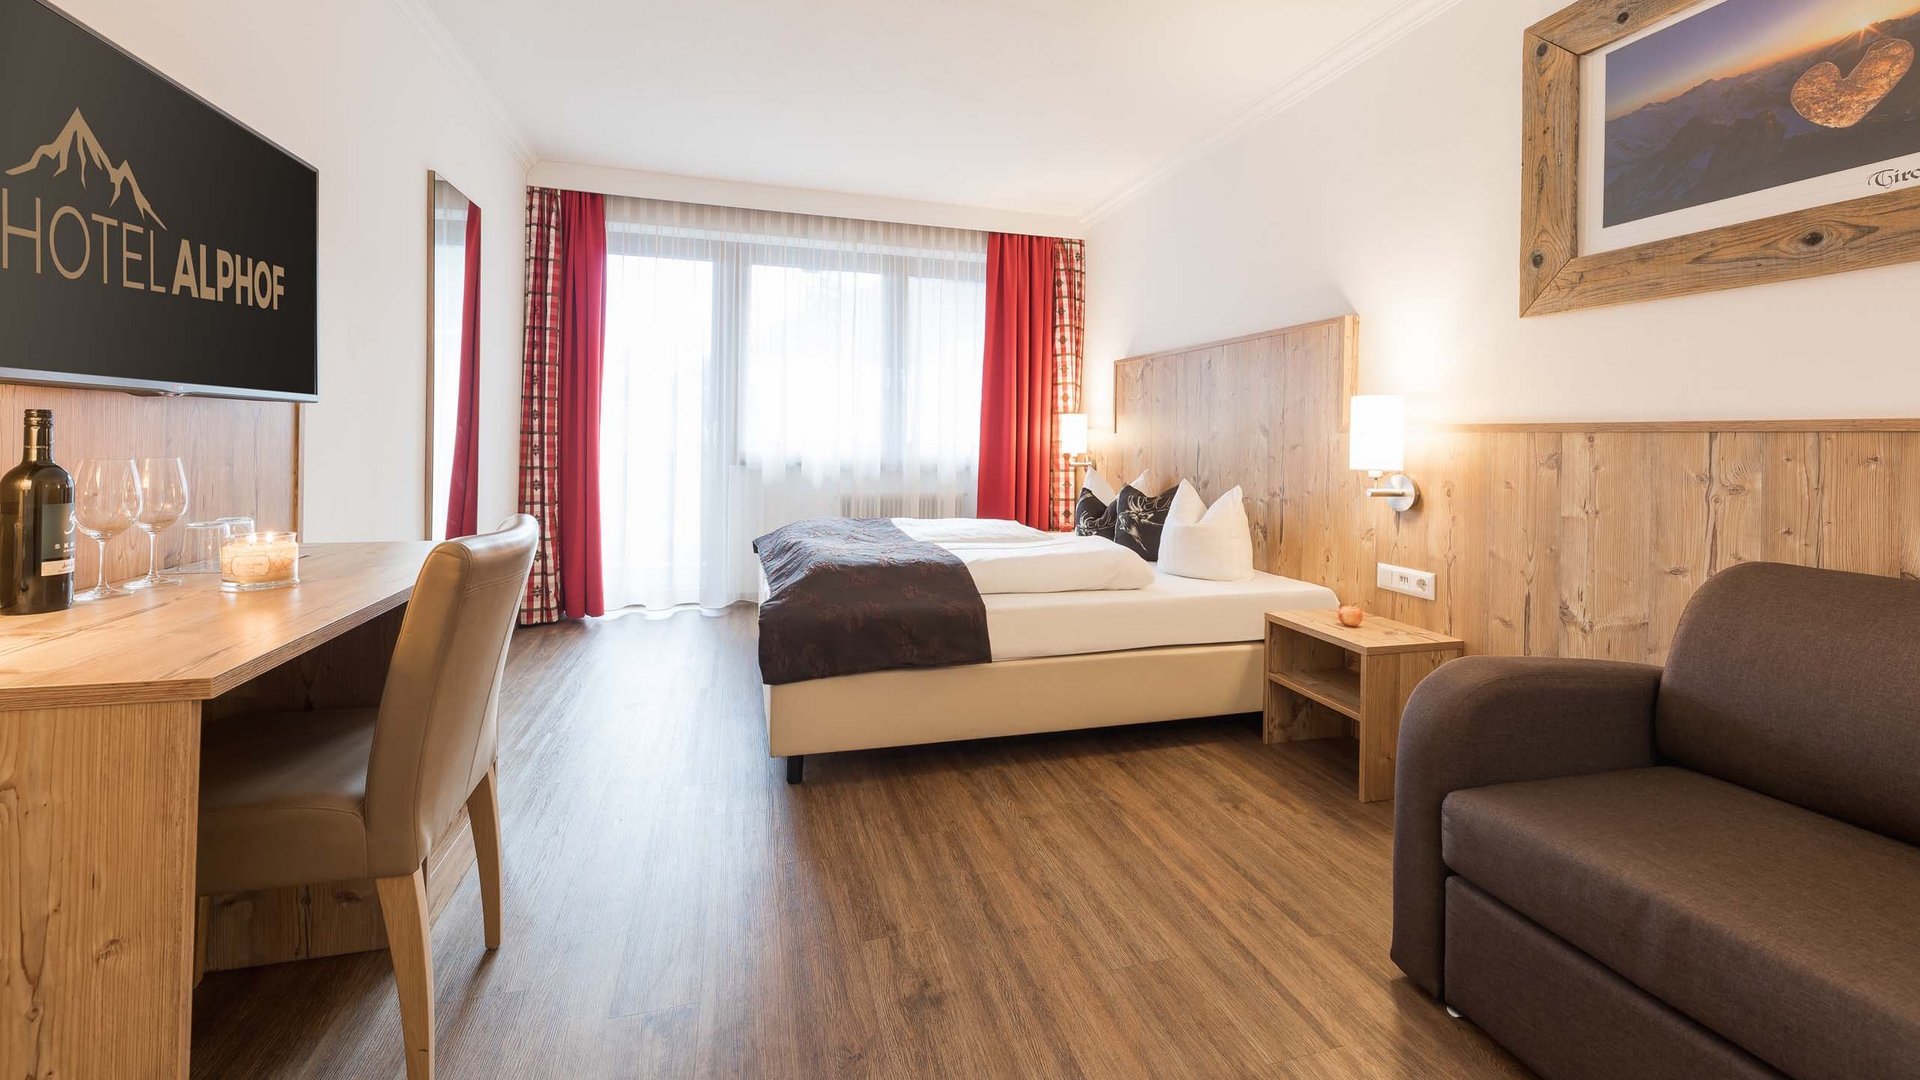 Your 3-star-superior hotel in Stubaital: the Alphof awaits!